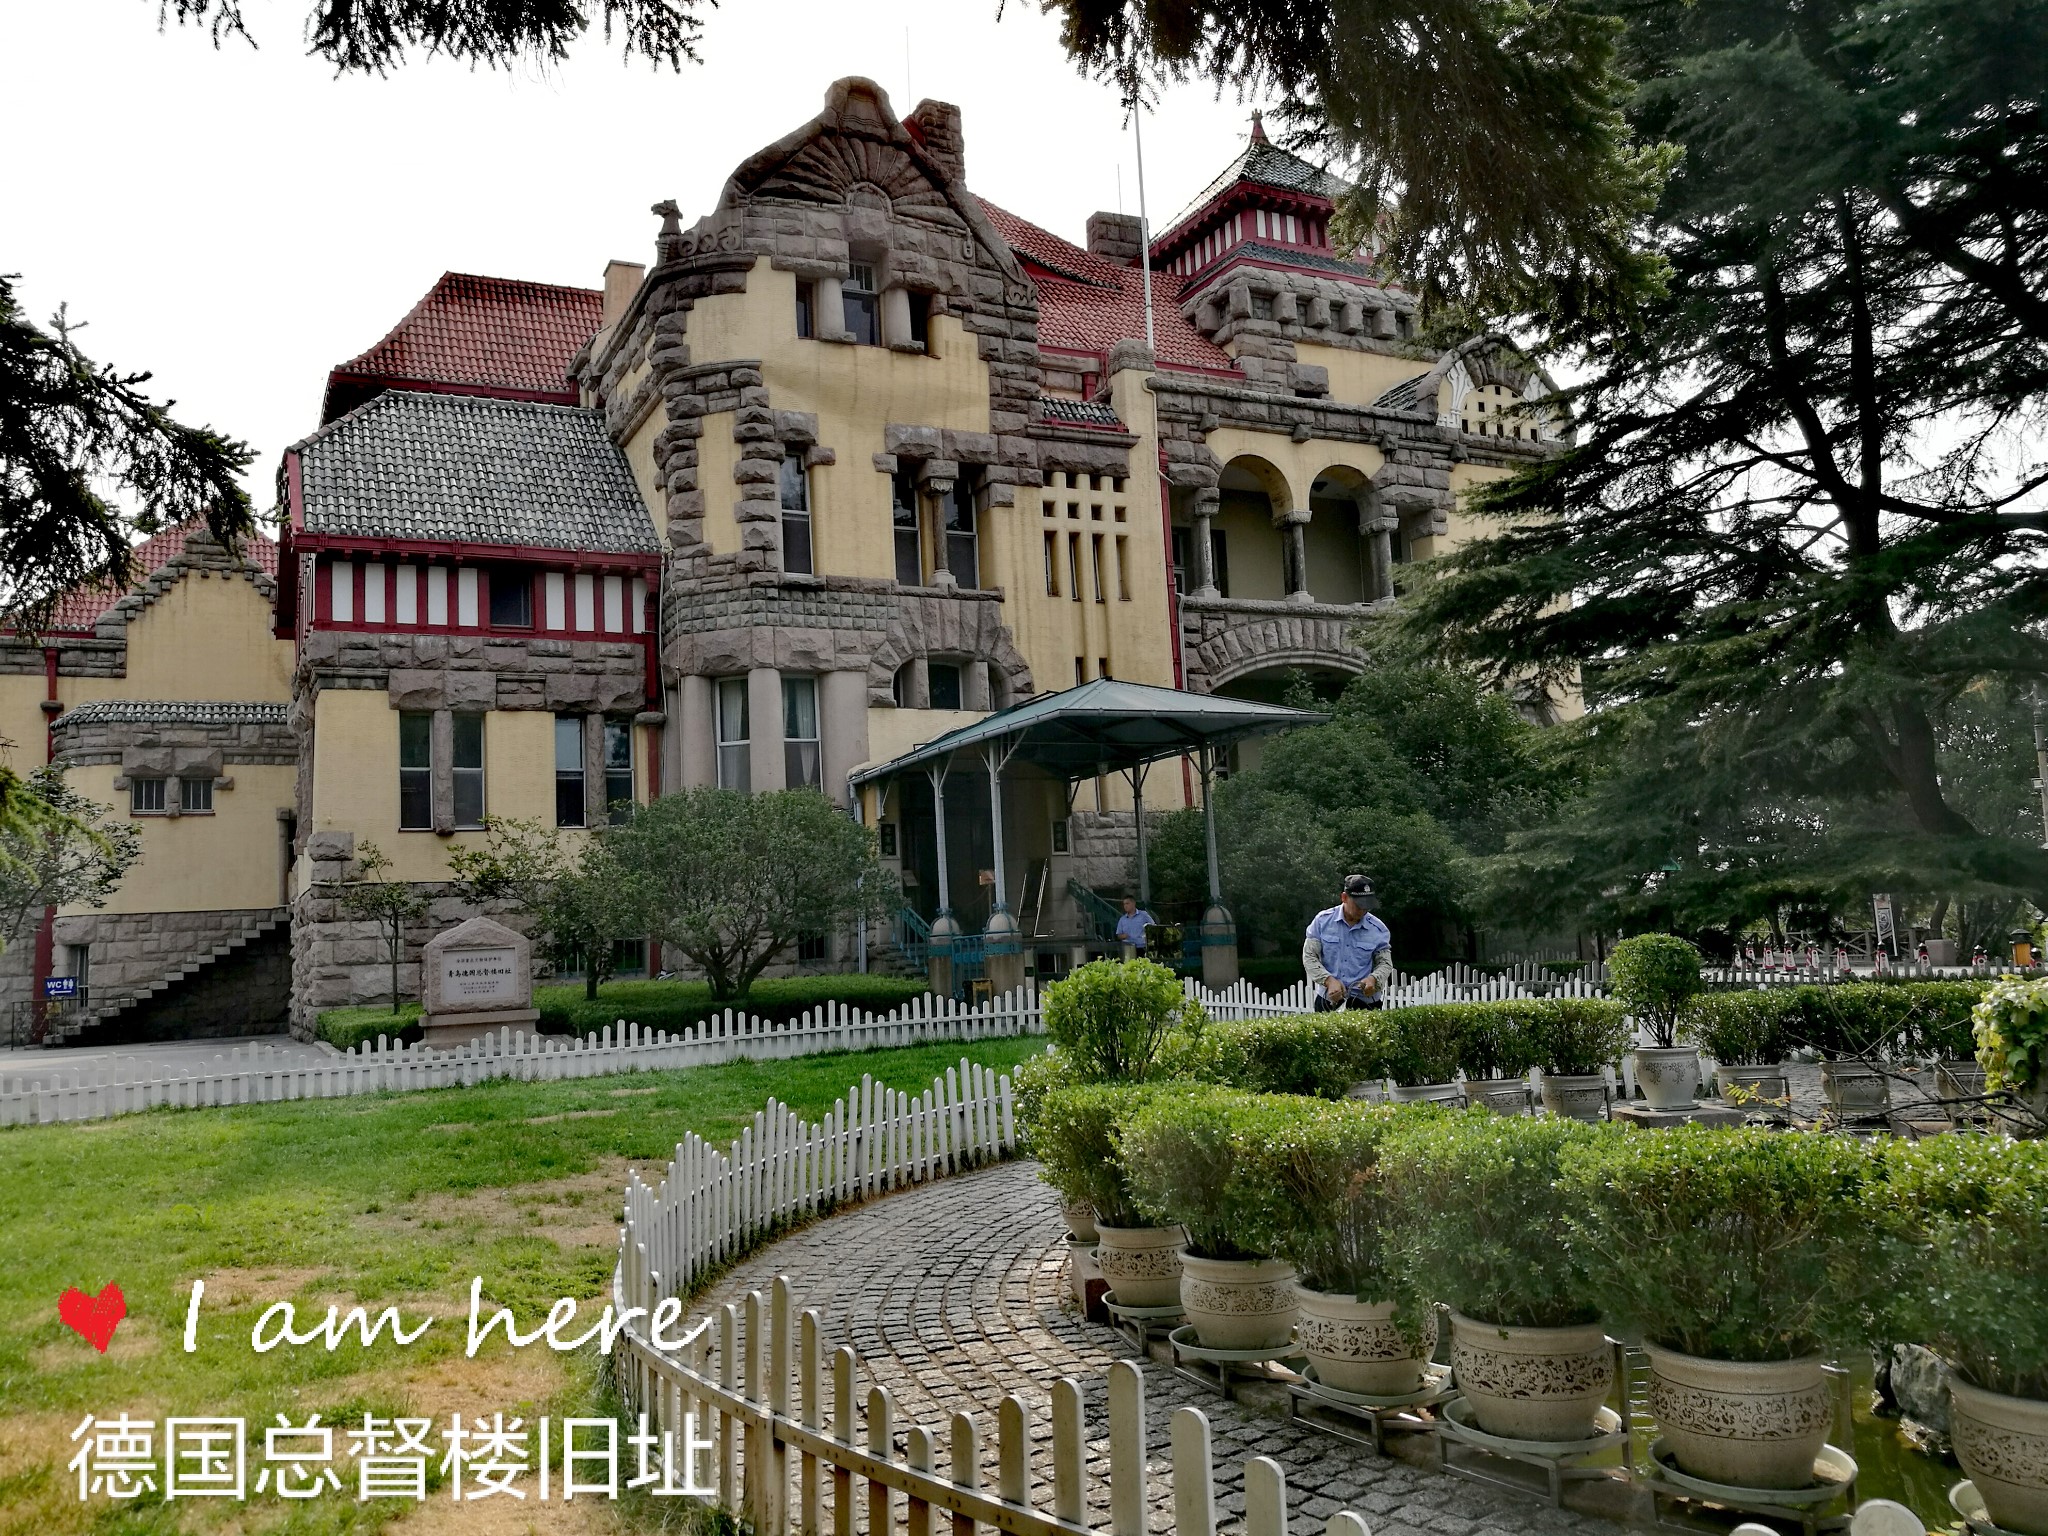 青岛德国总督楼旧址博物馆(迎宾馆)是历史遗址博物馆,位于